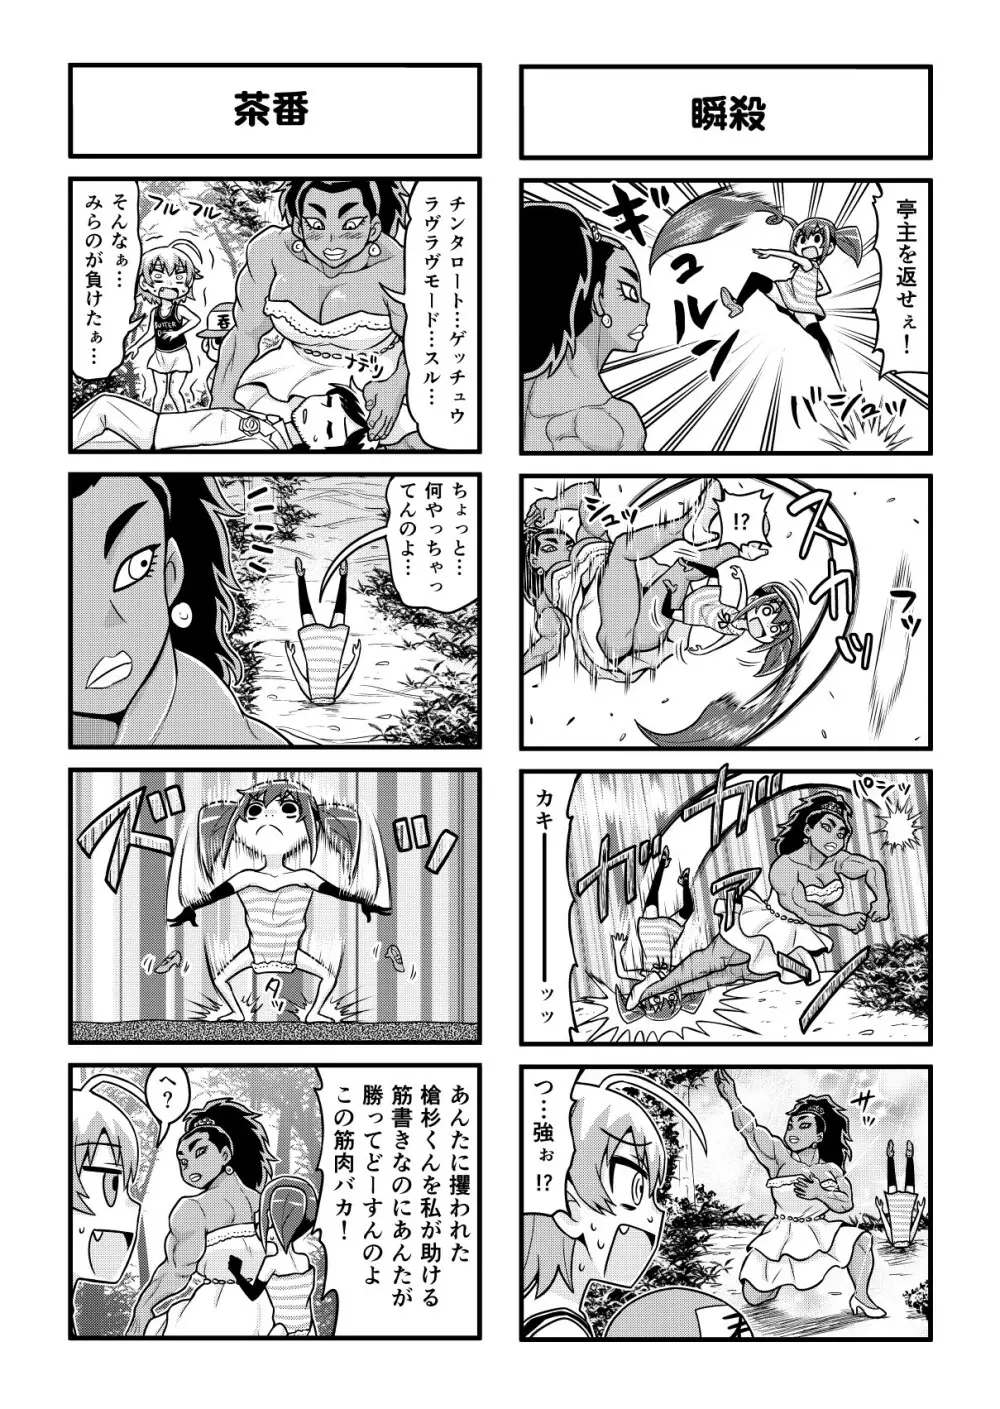 のんきBOY 1-48 - page289